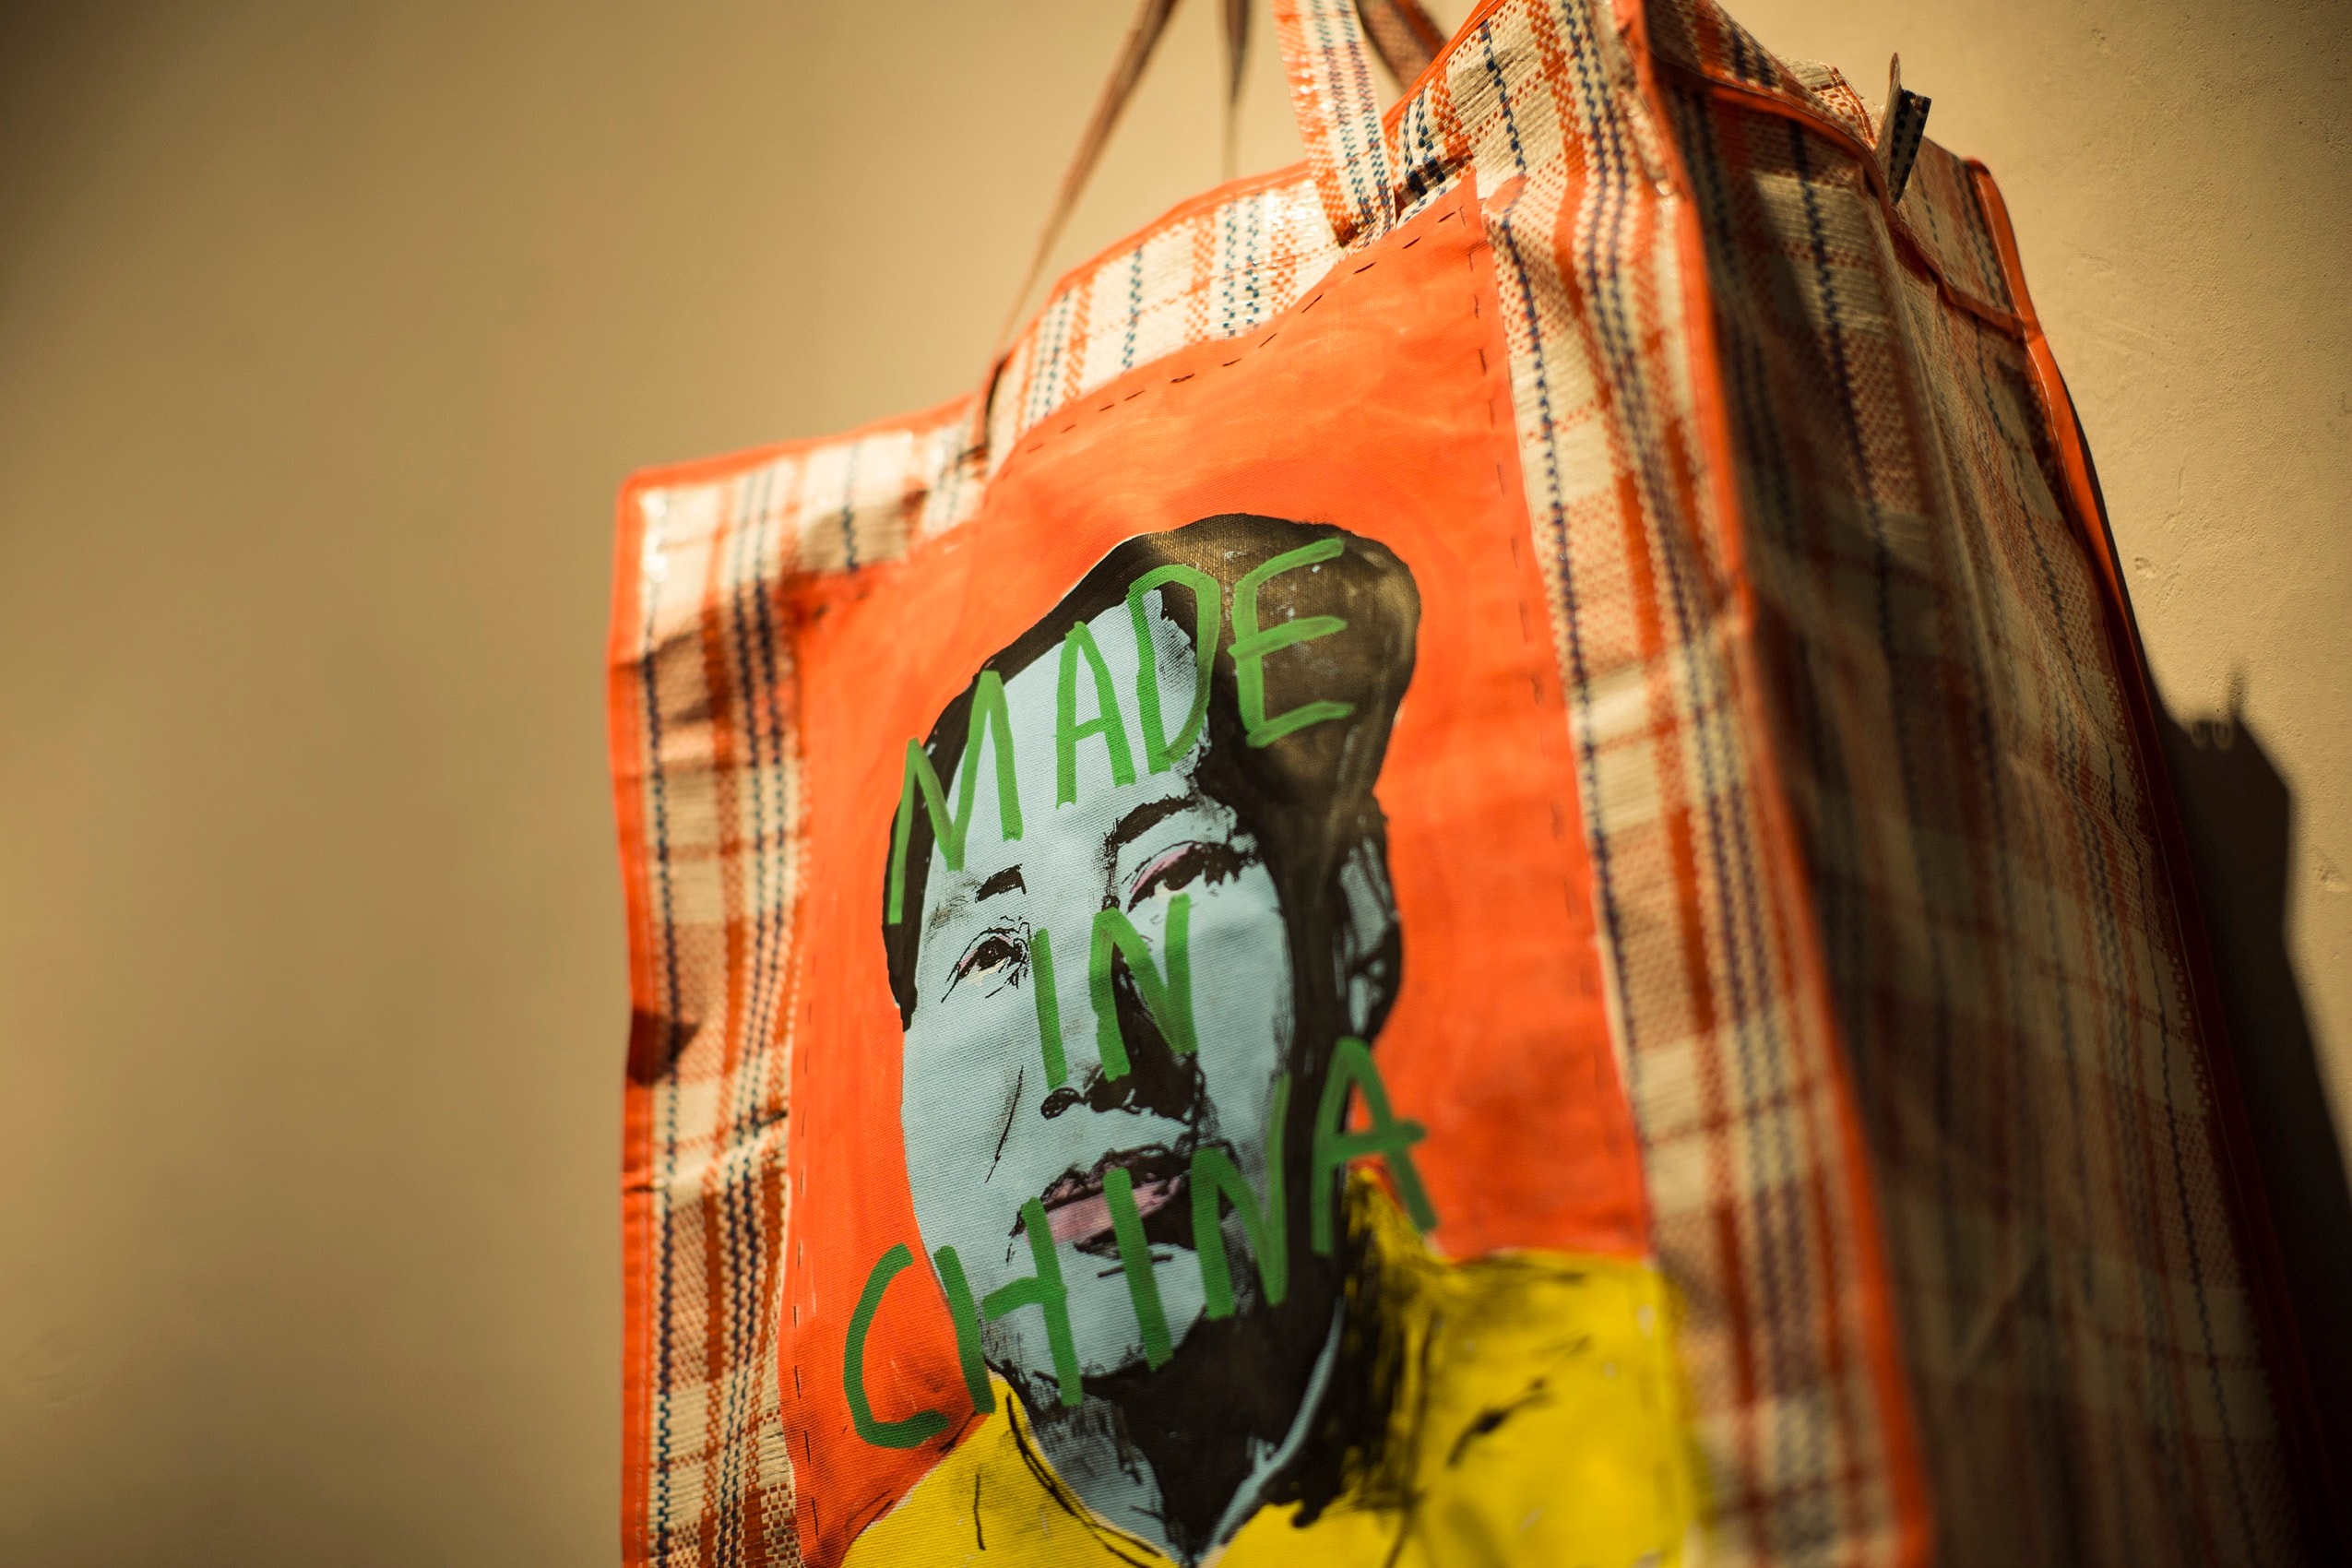 新晉藝術家 CB Hoyo 在香港舉辦個展「Made in China」展覽